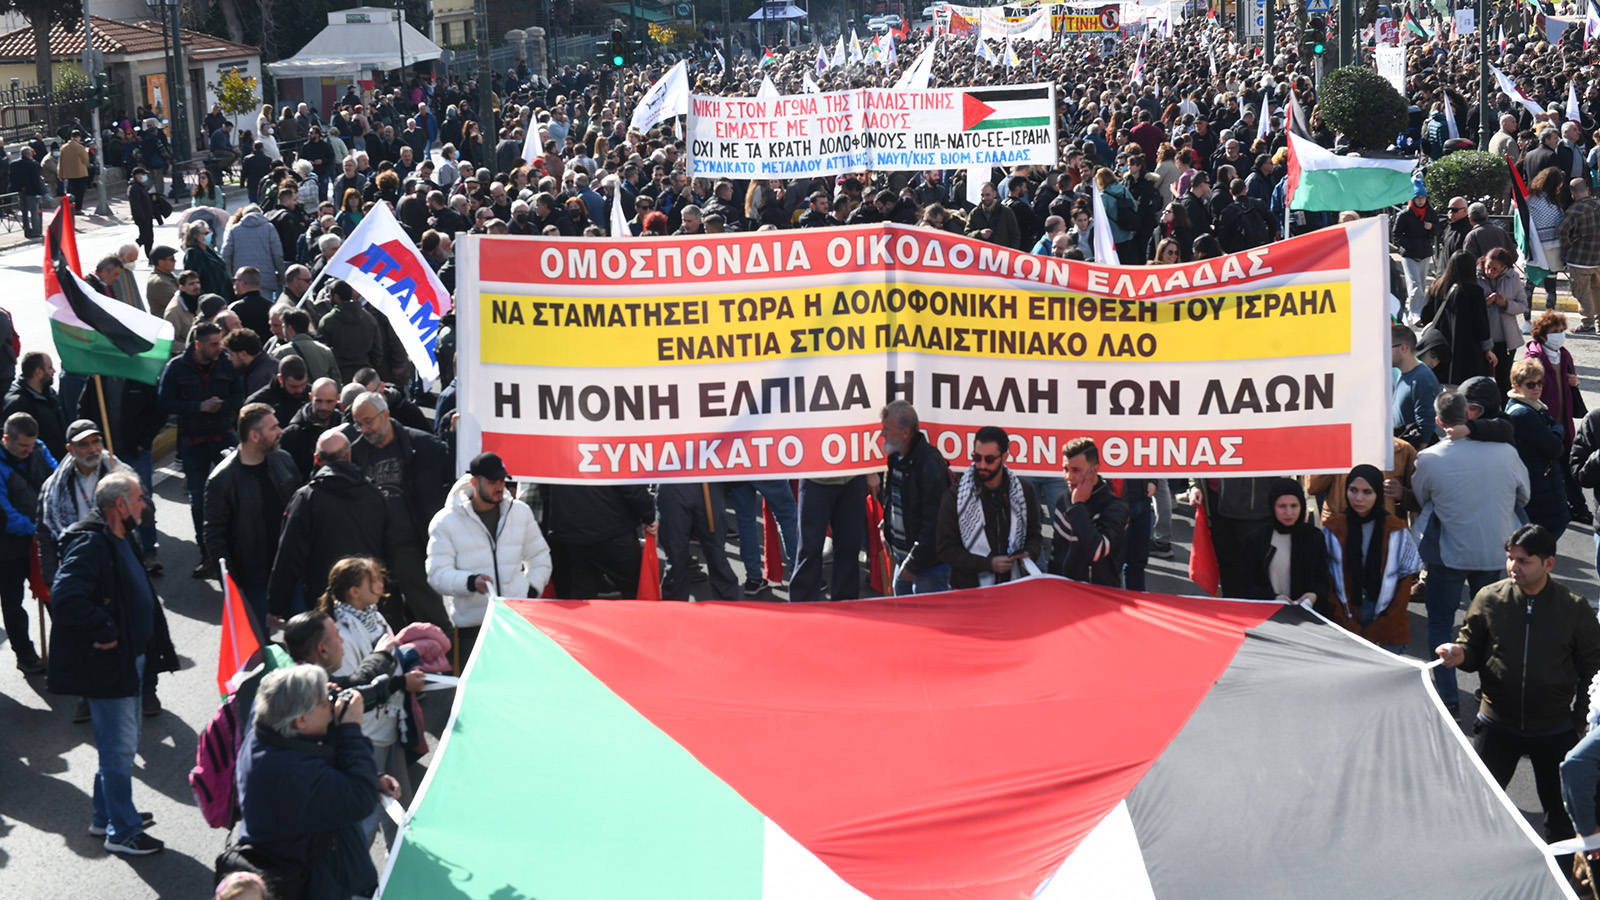 Μεγάλο συλλαλητήριο αλληλεγγύης στον παλαιστινιακό λαό στο κέντρο της Αθήνας